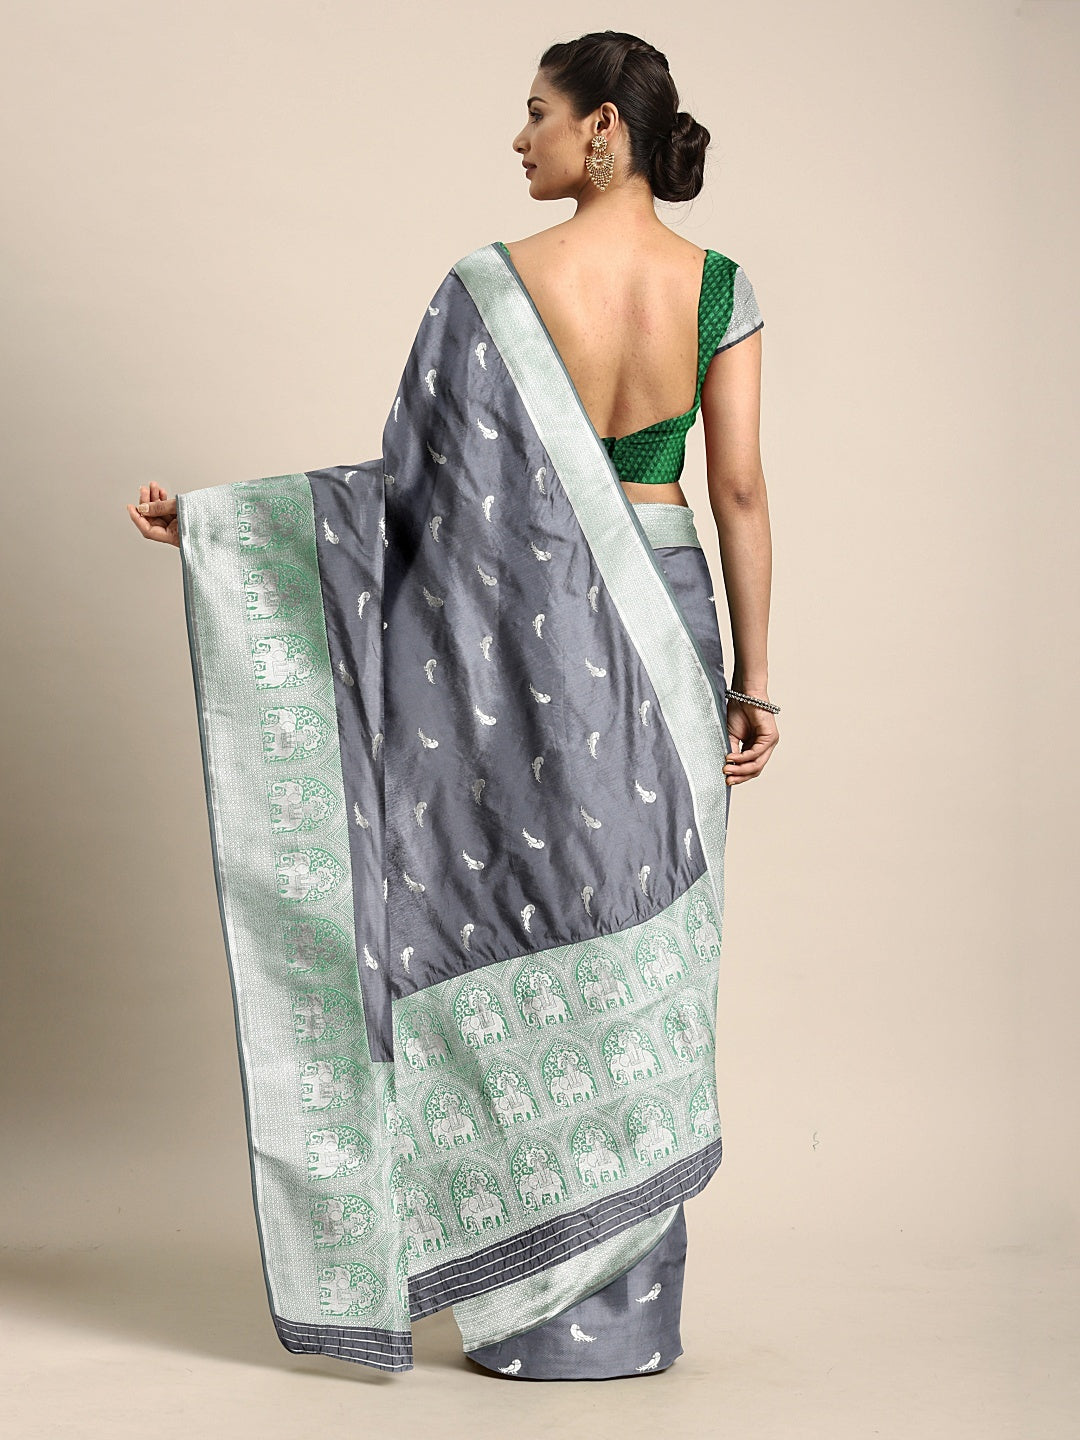 Neeru's Grey Textured Saree With Blouse